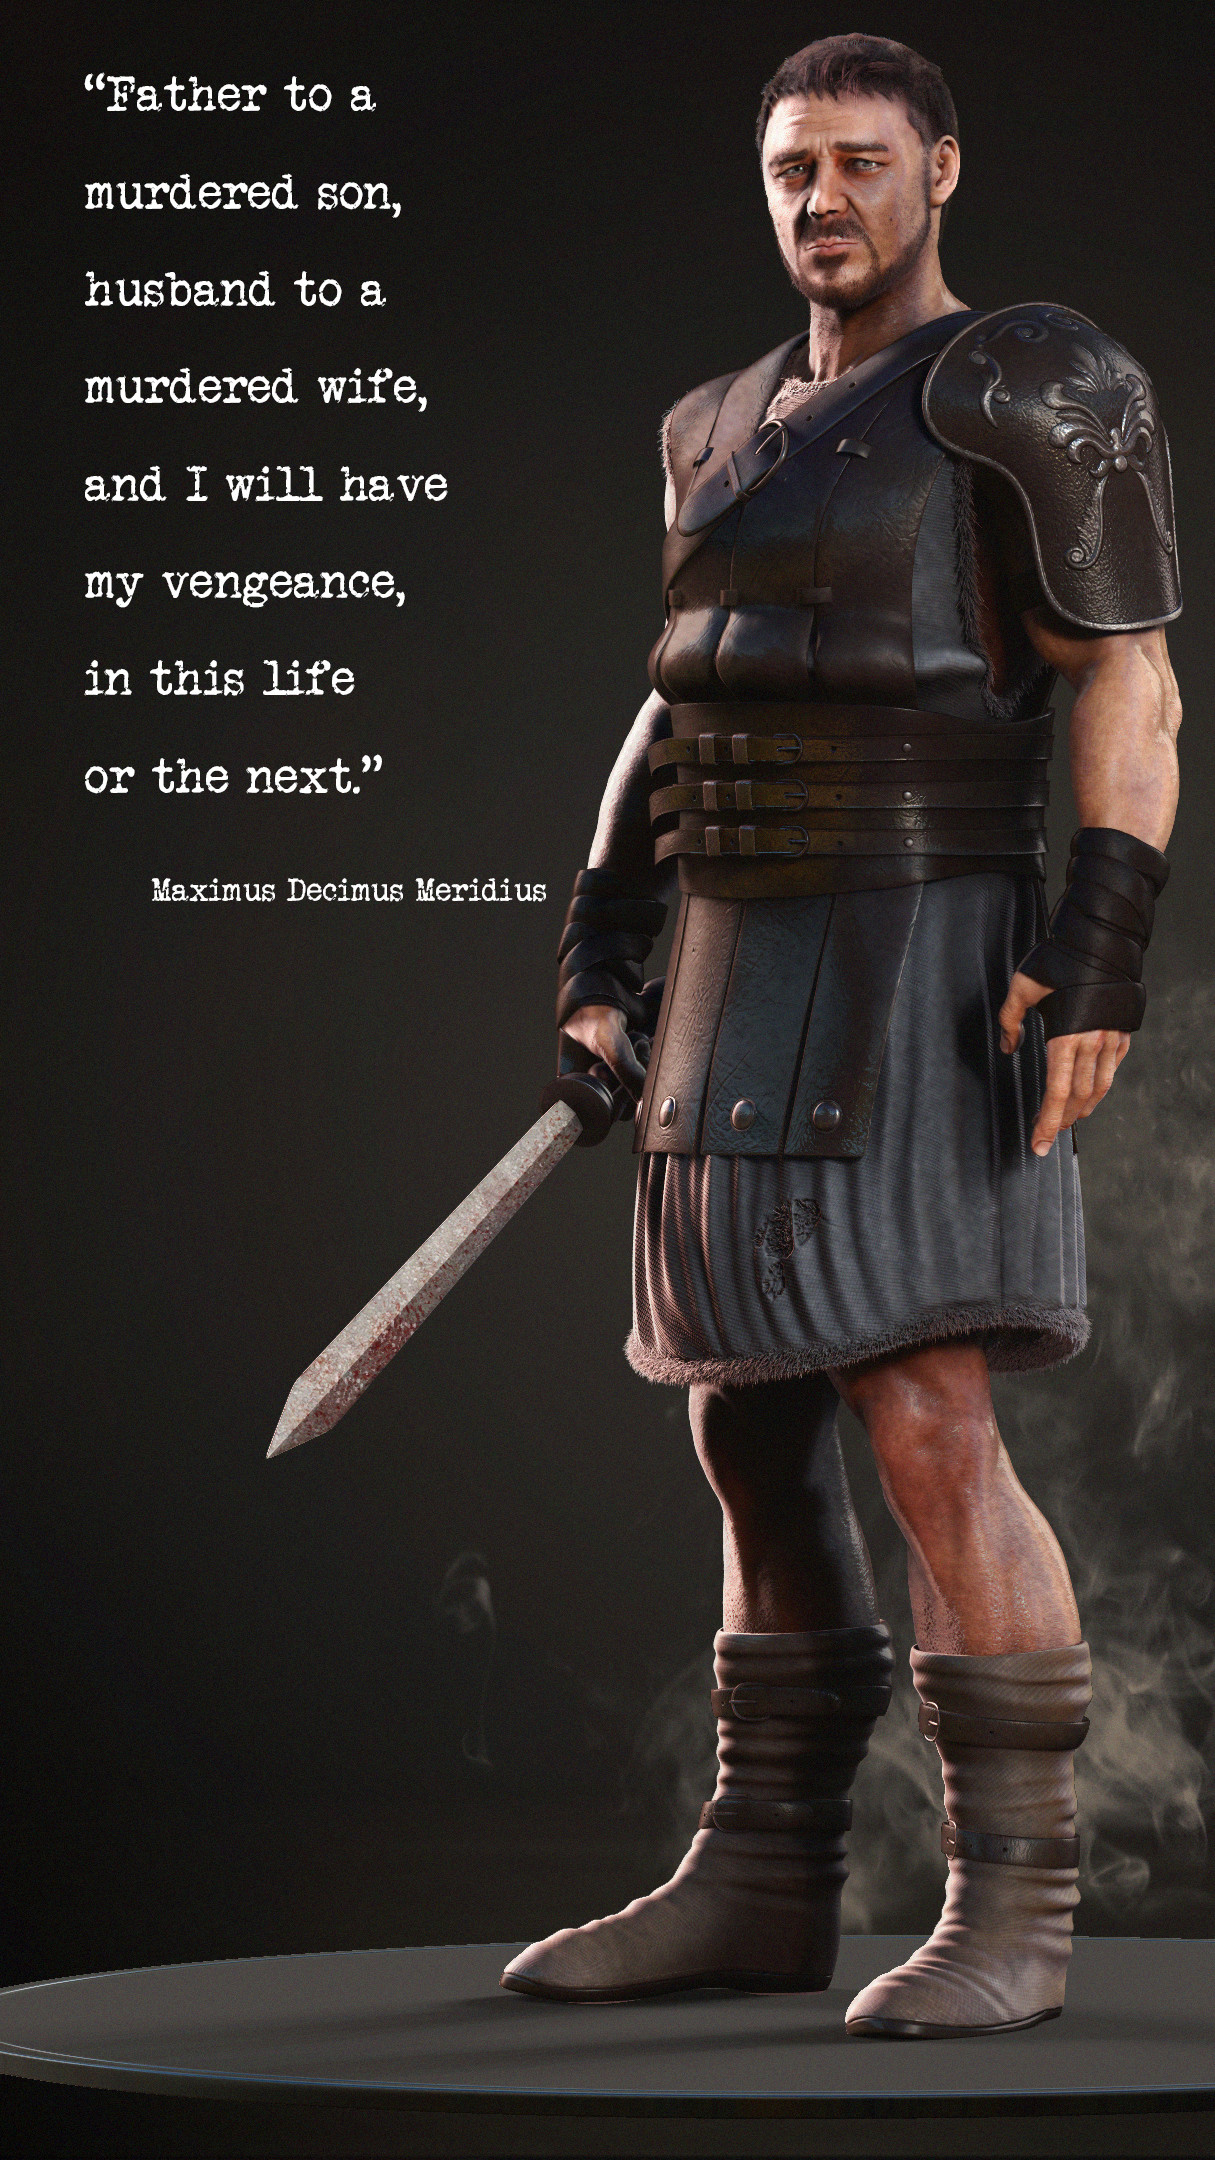 gladiator quotes maximus